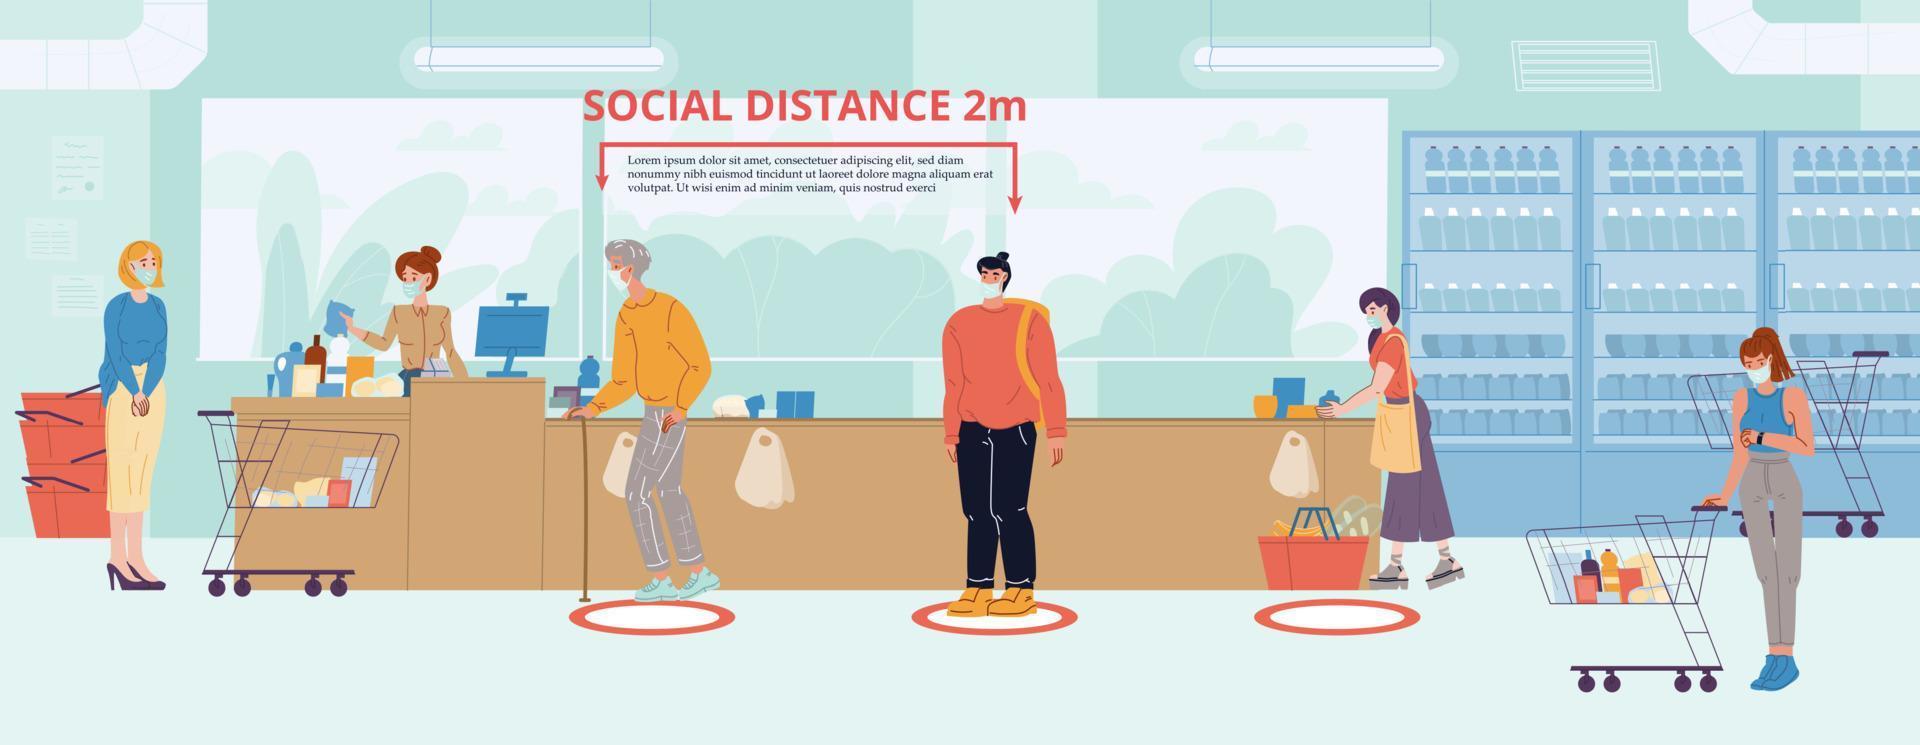 le persone mantengono la distanza sociale alla cassa del negozio vettore